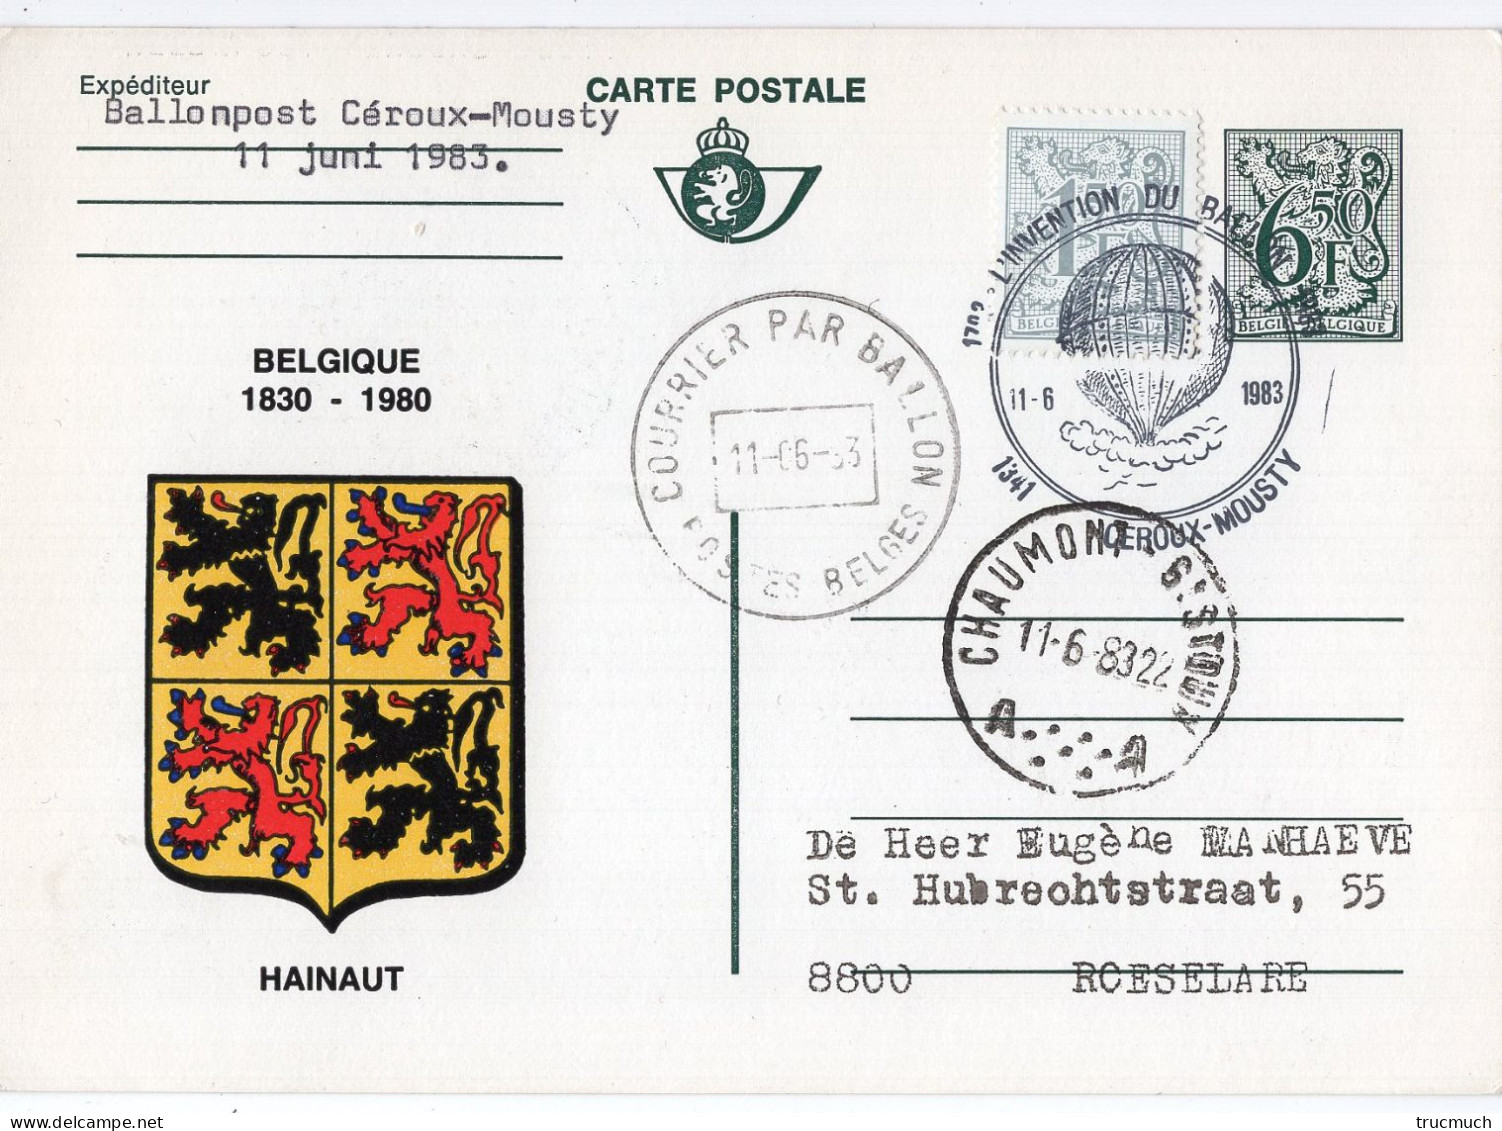 PHILATELIE - Carte Postale - Courrier Par Ballon - Armoiries HAINAUT - CEROUX-MOUSTY - Oblitérés